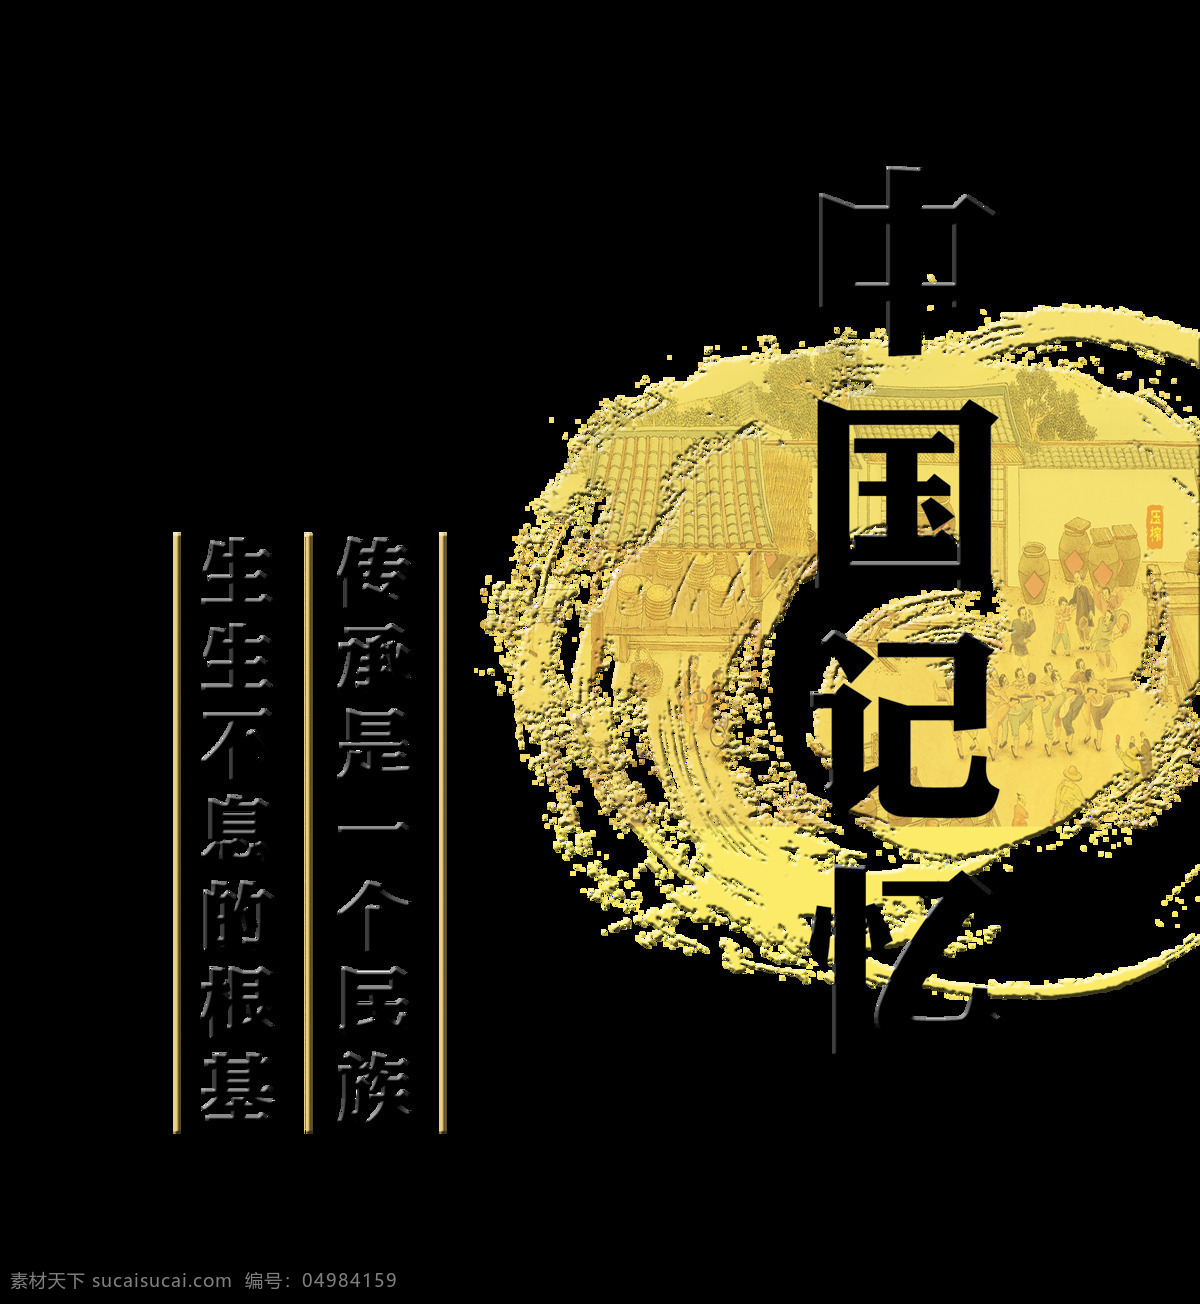 中国 记忆 文化 传承 艺术 字 发展 字体 排版 中国记忆 文化传承 民族 根基 艺术字